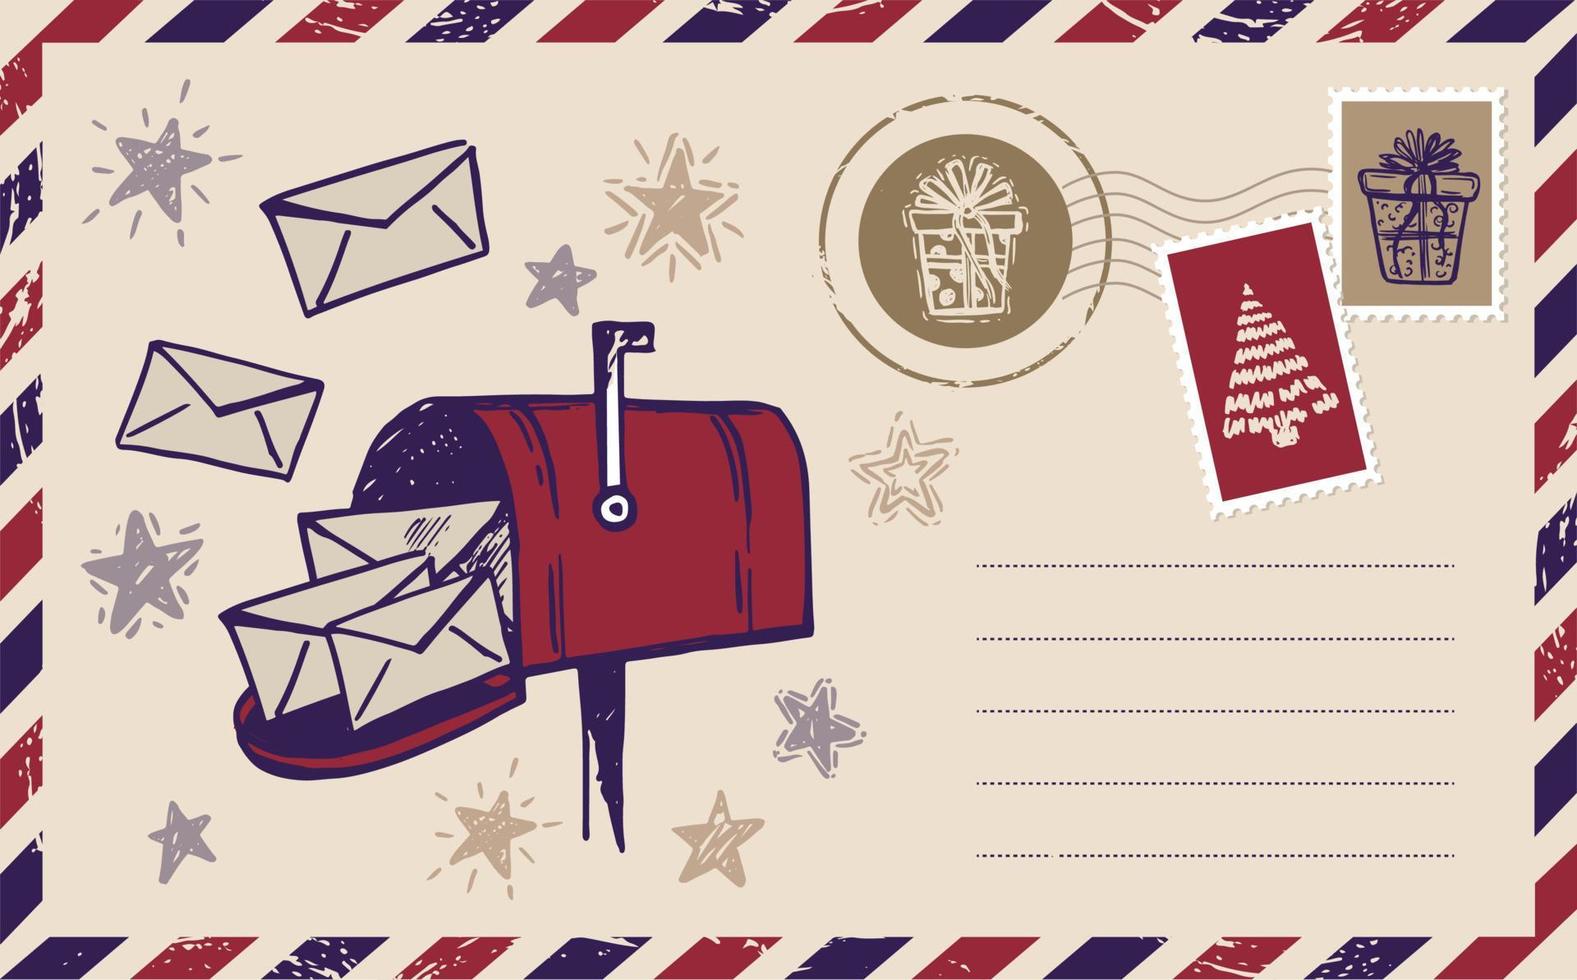 correio de natal, cartão postal, ilustração desenhada à mão. vetor